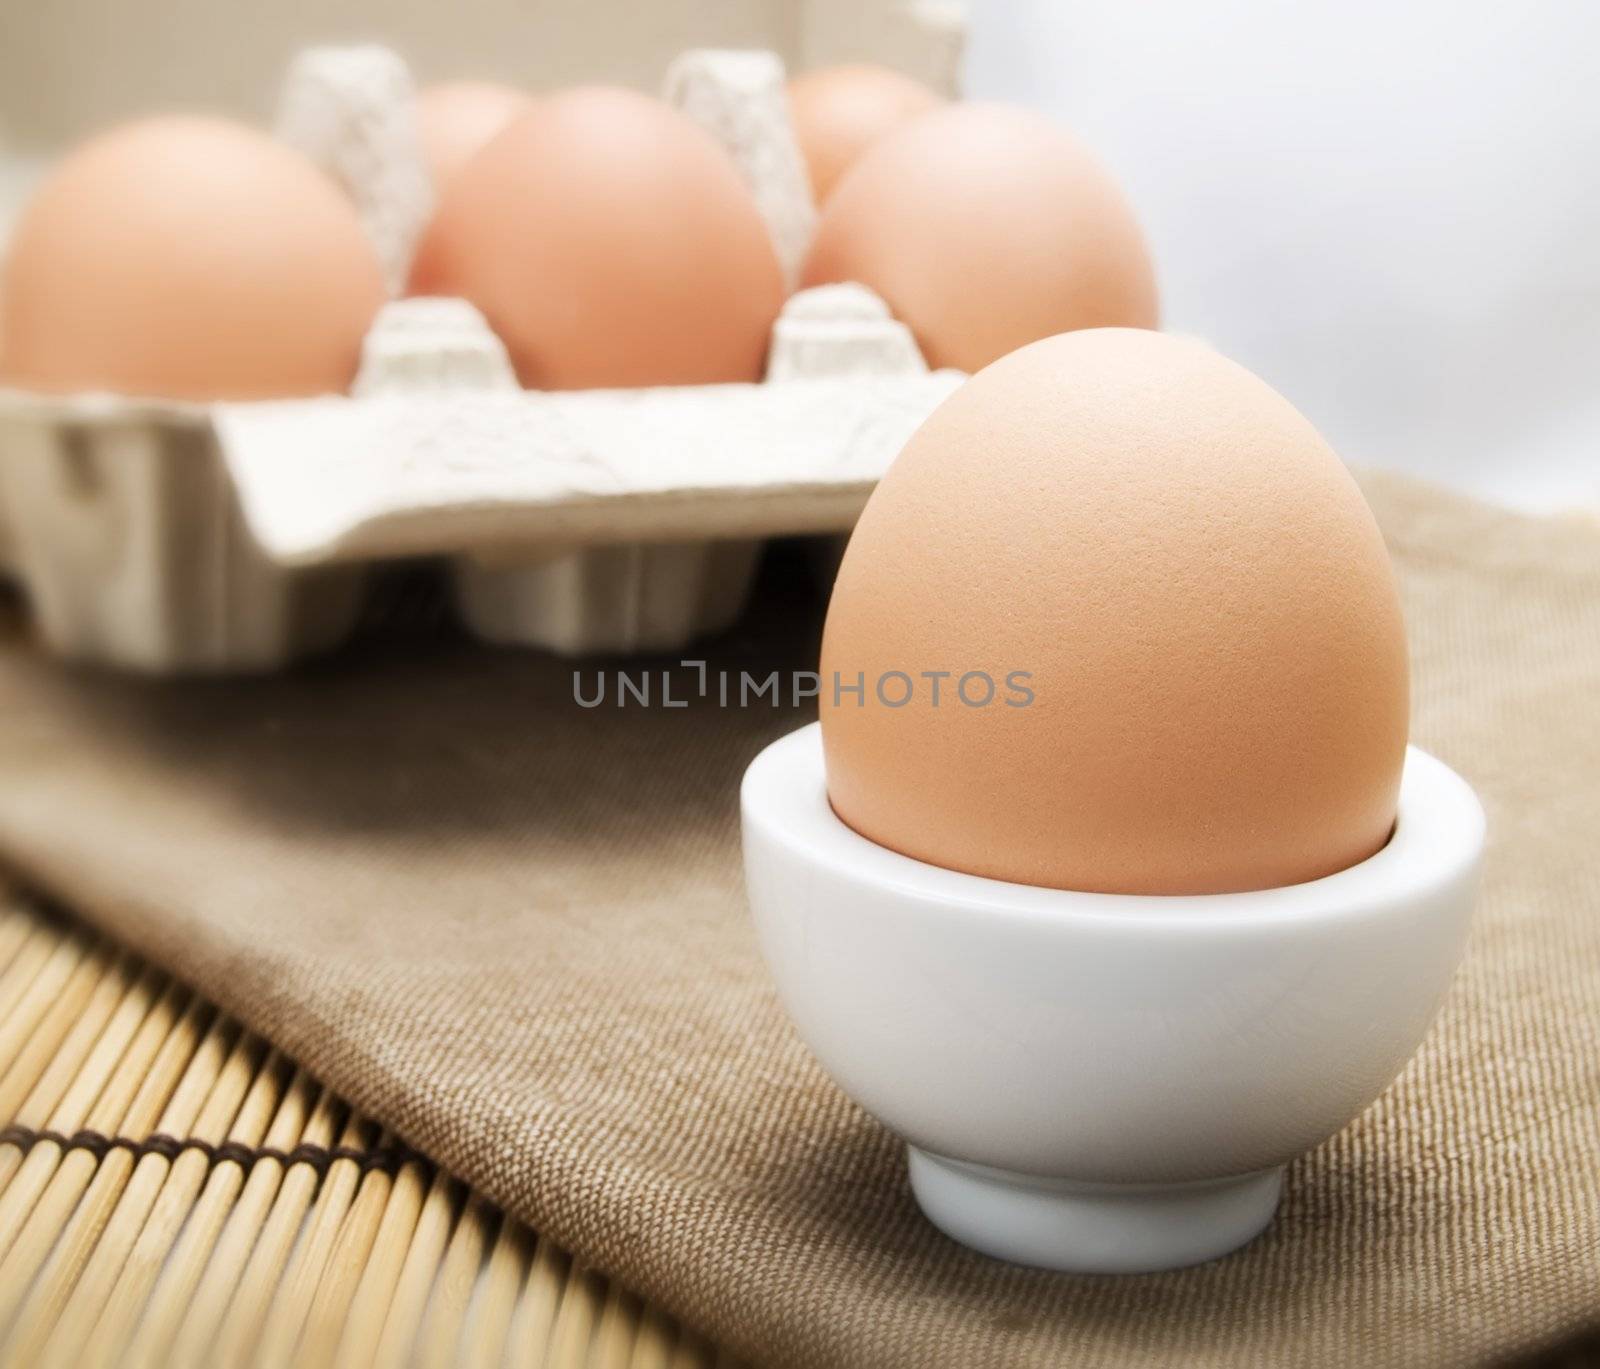 Egg by henrischmit